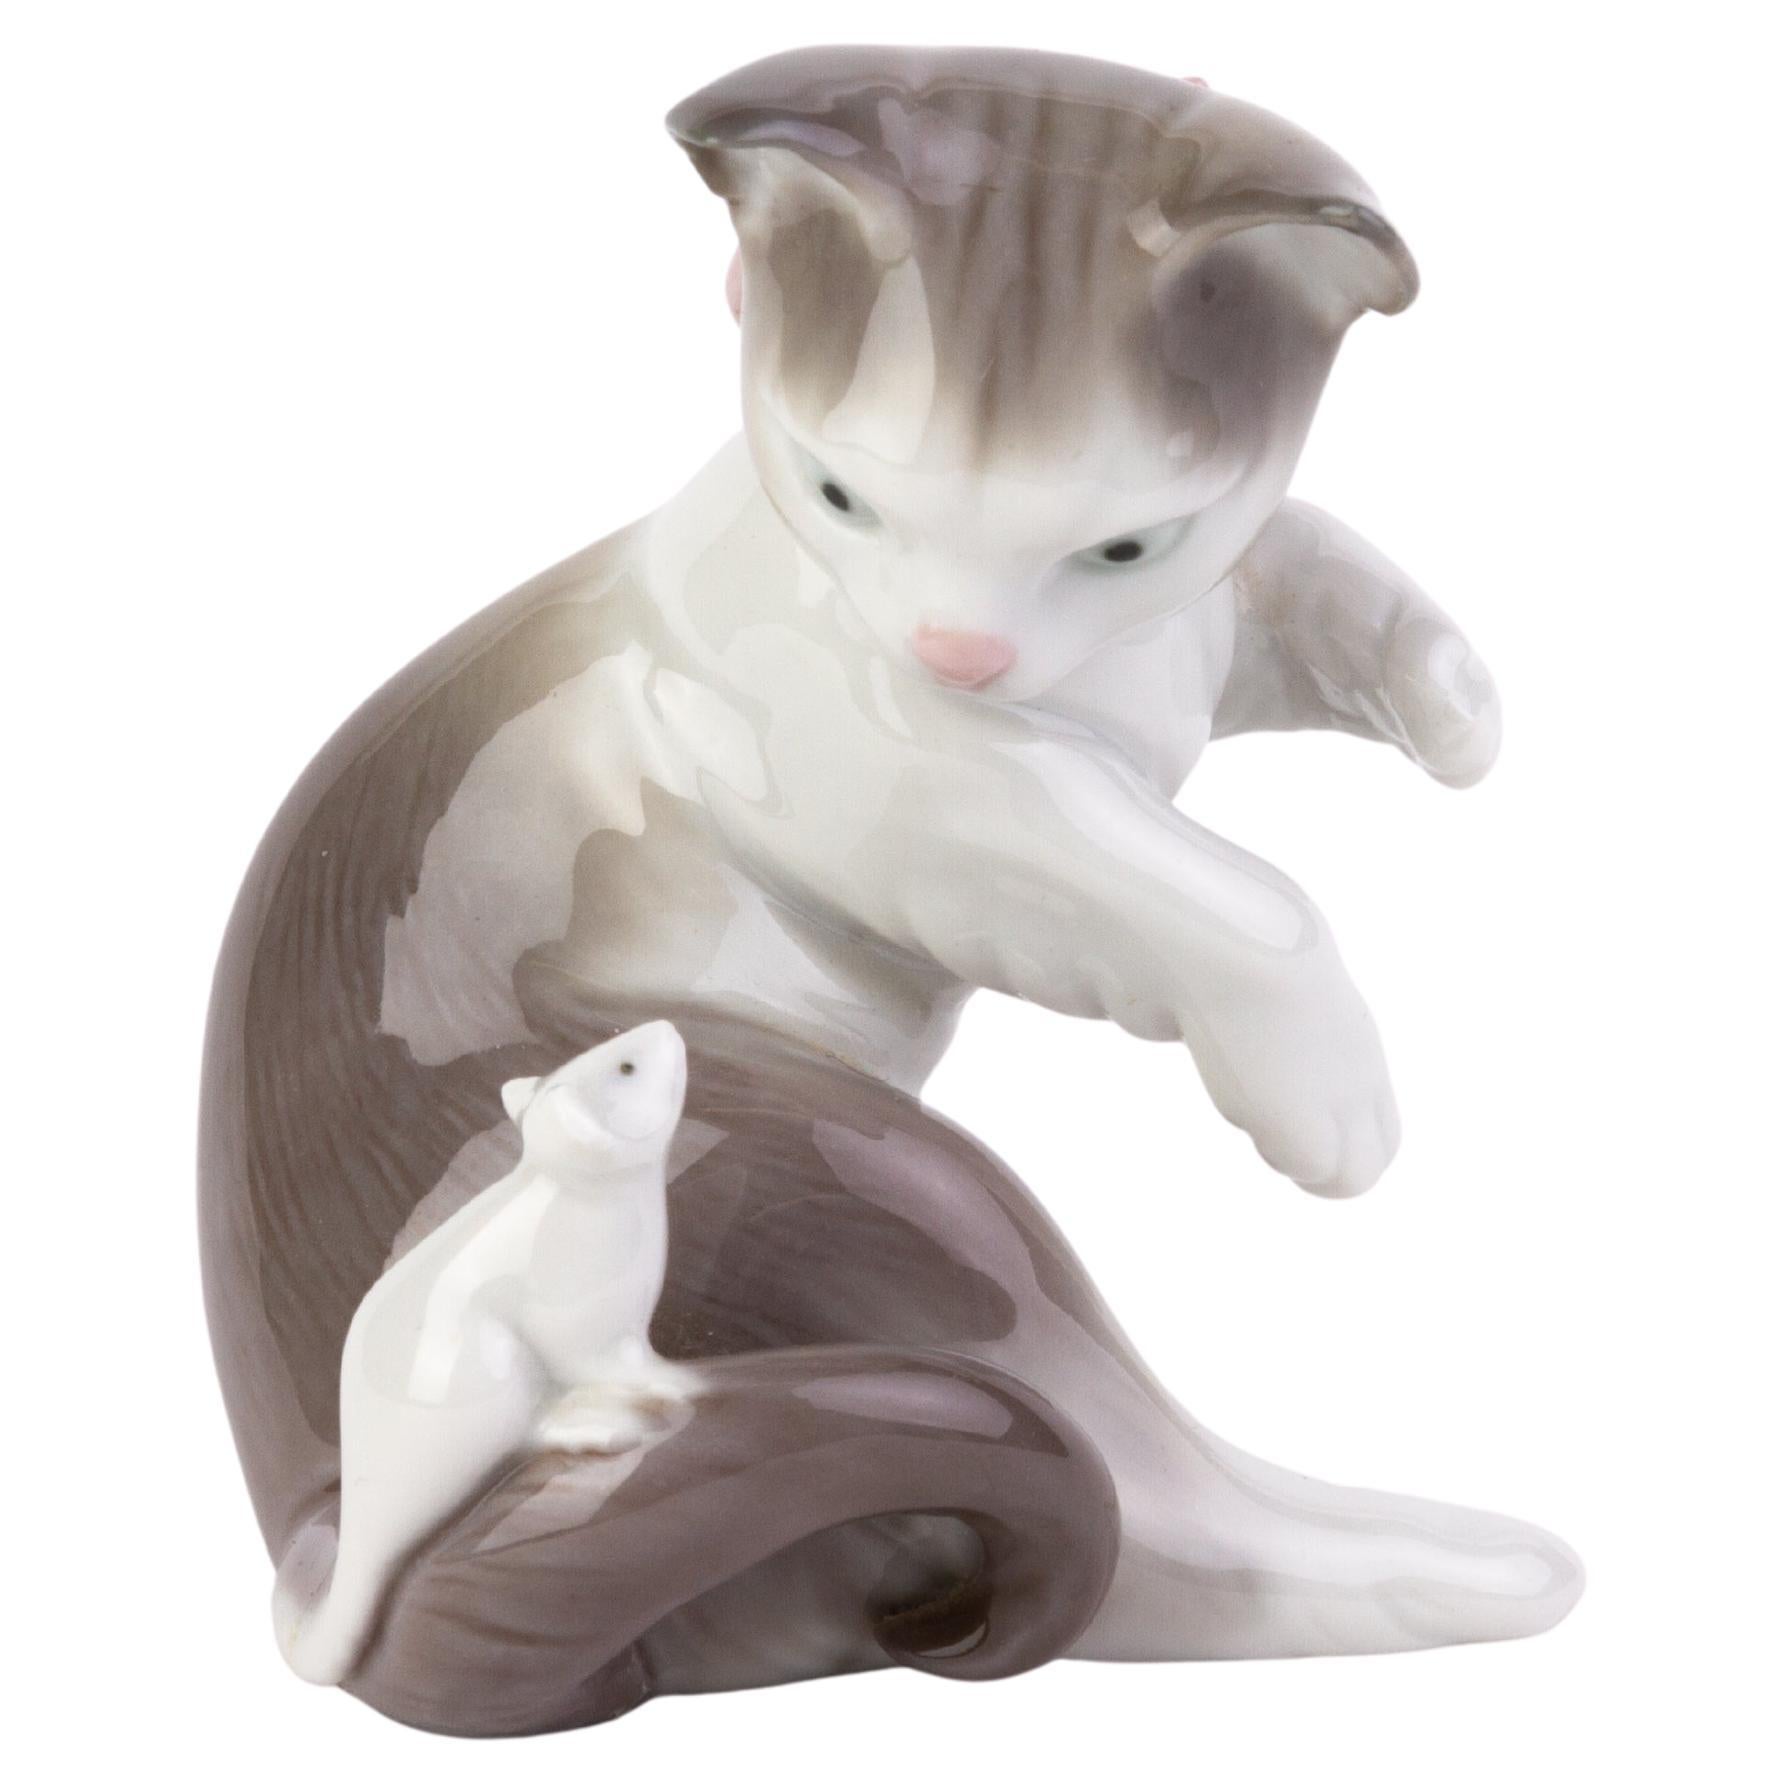 Lladro Fine Porcelain Sculpture Figure "Cat and Mouse" 5236